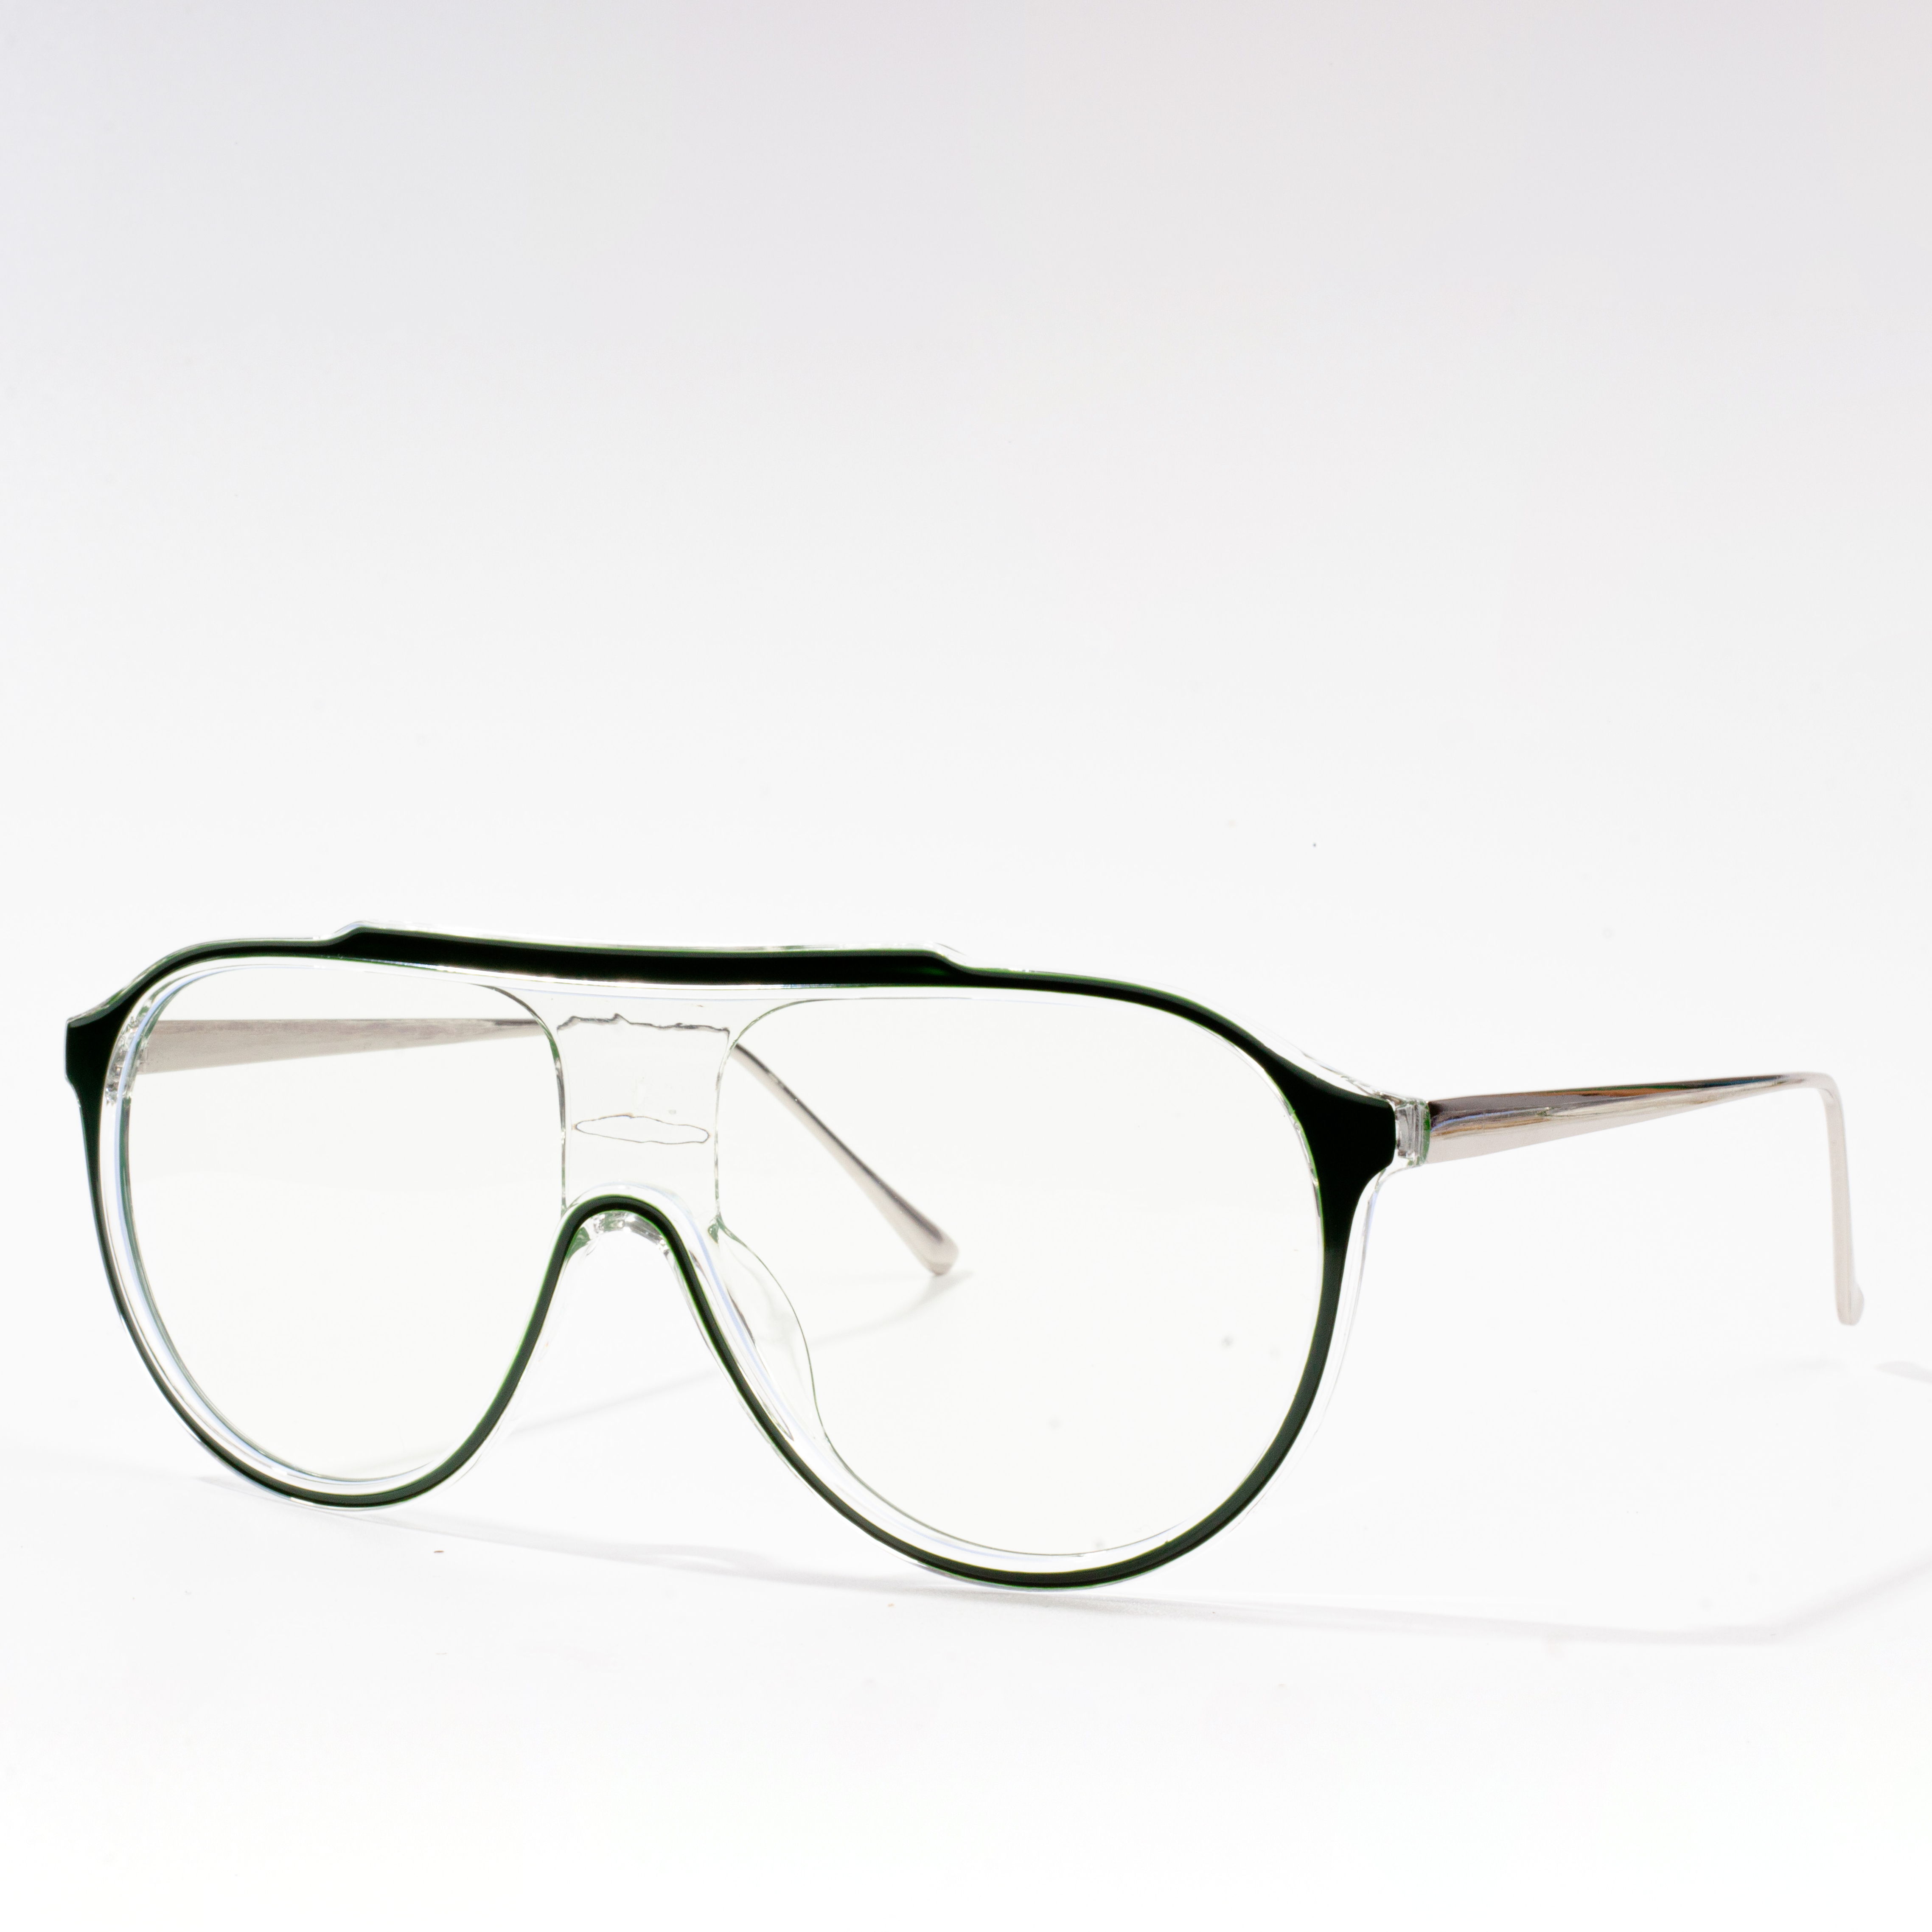 dizainerių sukurti akinių rėmeliai